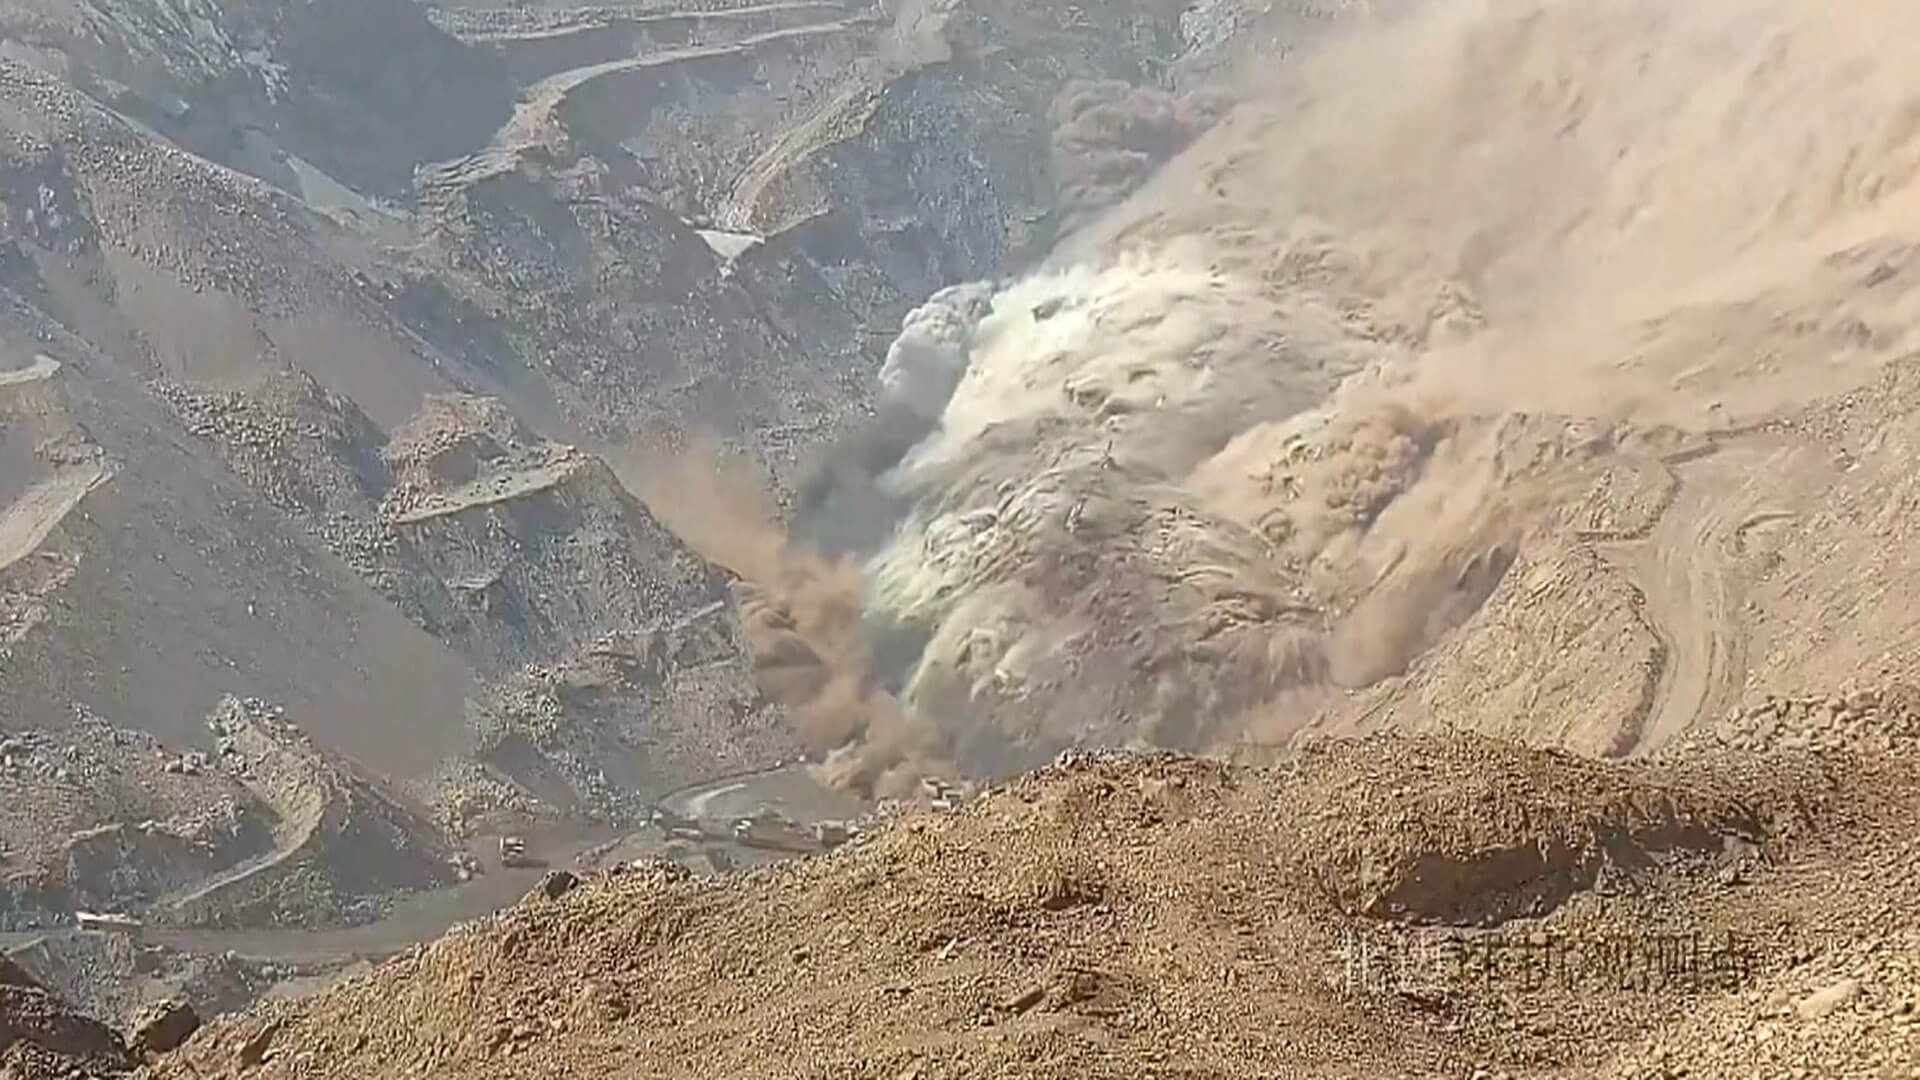 Erzincan’daki Çöpler Altın Madeni Faciasına Ait Olduğu İleri Sürülen Çin’in İç Moğolistan Bölgesi’nde Kaydedilen Görüntü